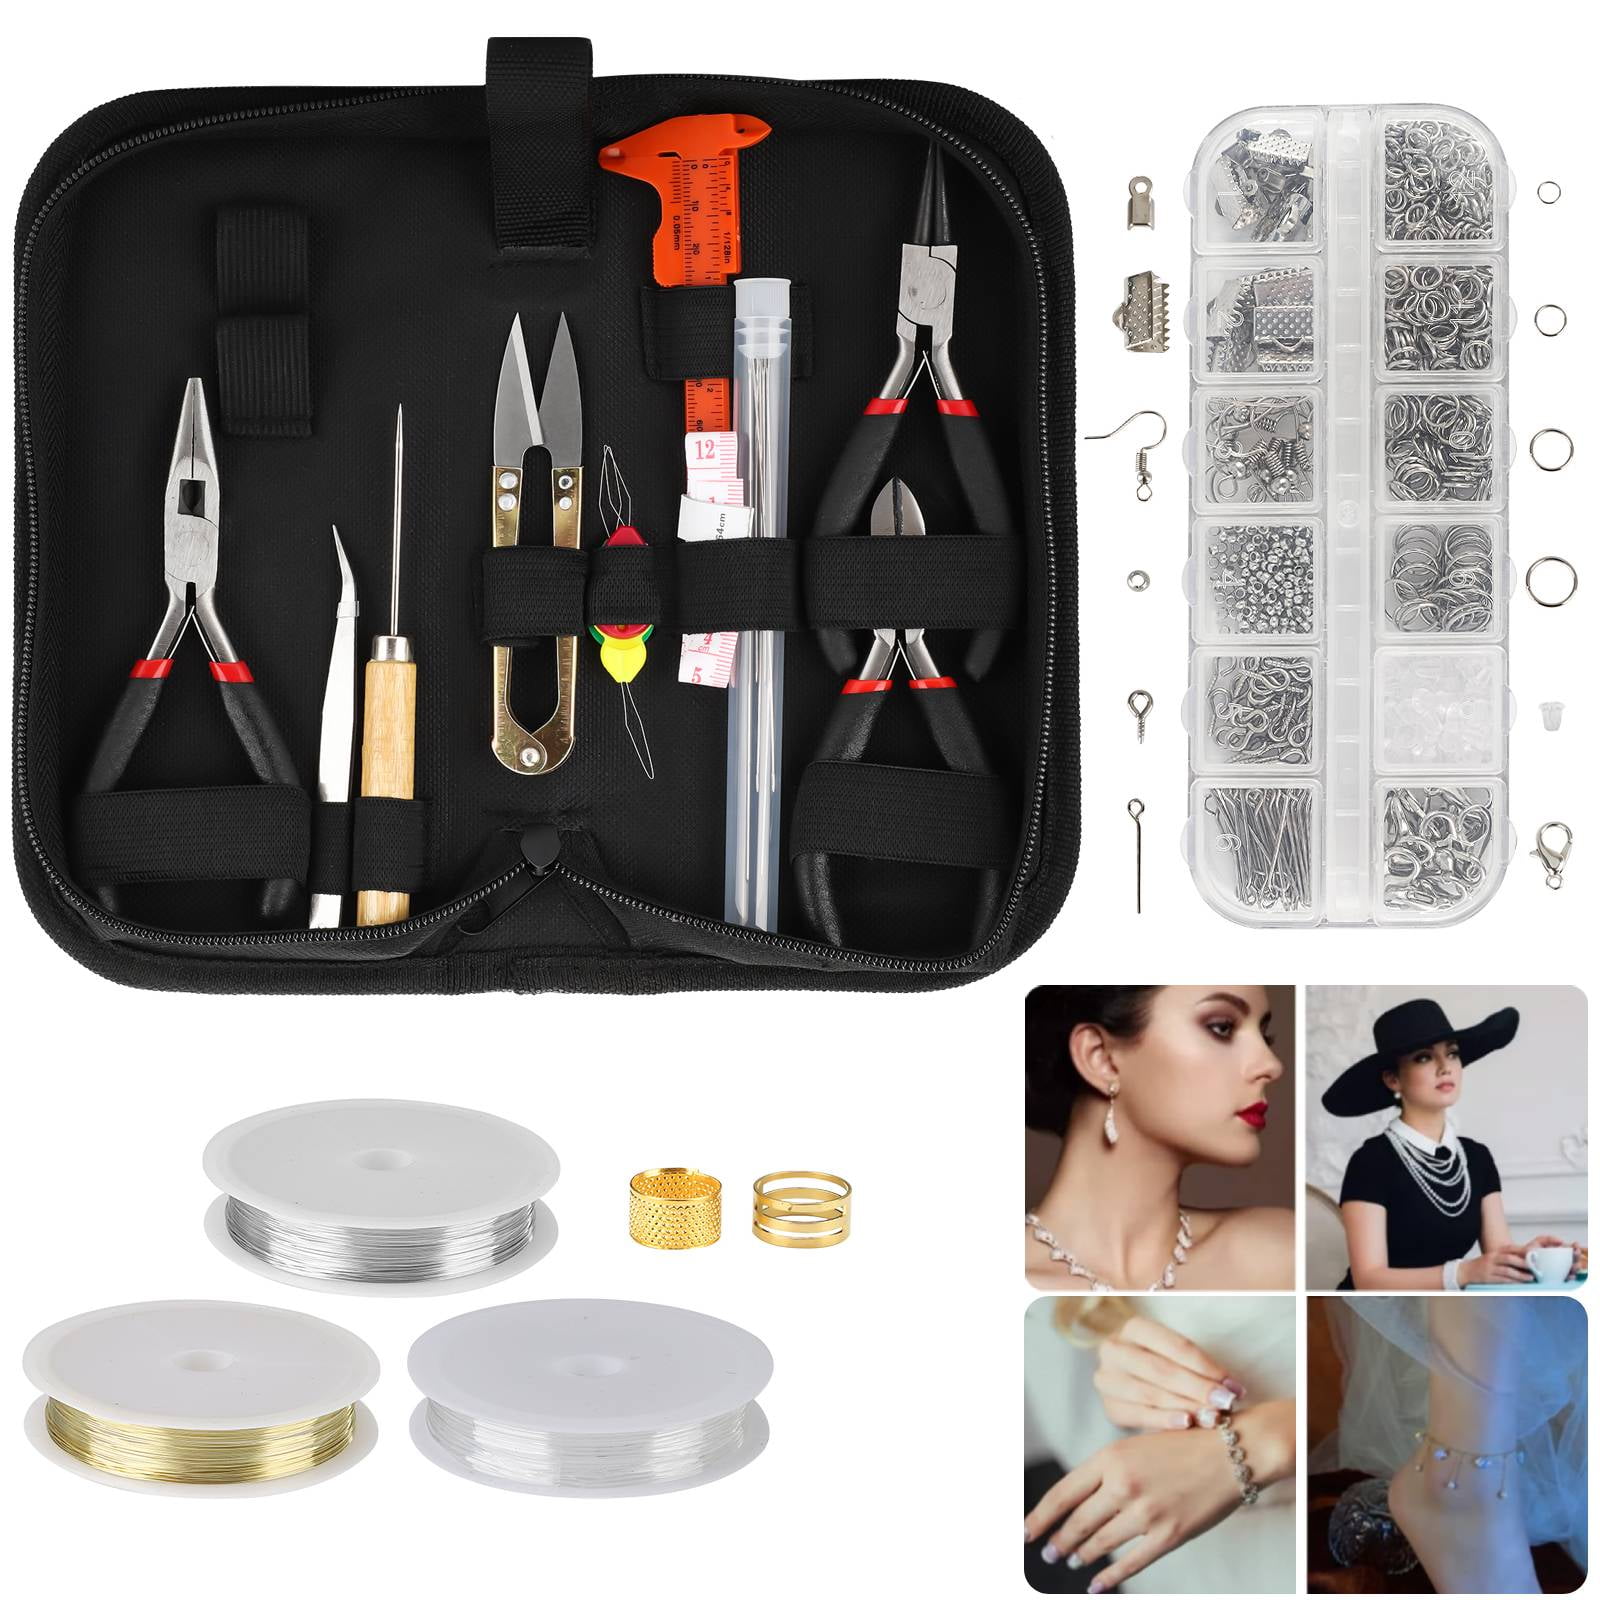 Jewelry Repair Kit, EEEkit Jewelry Finding Kit, Earring Making Supply,  Jewelry Making Supplies, Jewelry Tools, Jewelry Wire, Wire Wrapping Tool  Kits, Beading Supplies, Bracelet Jewelry Making Kit 